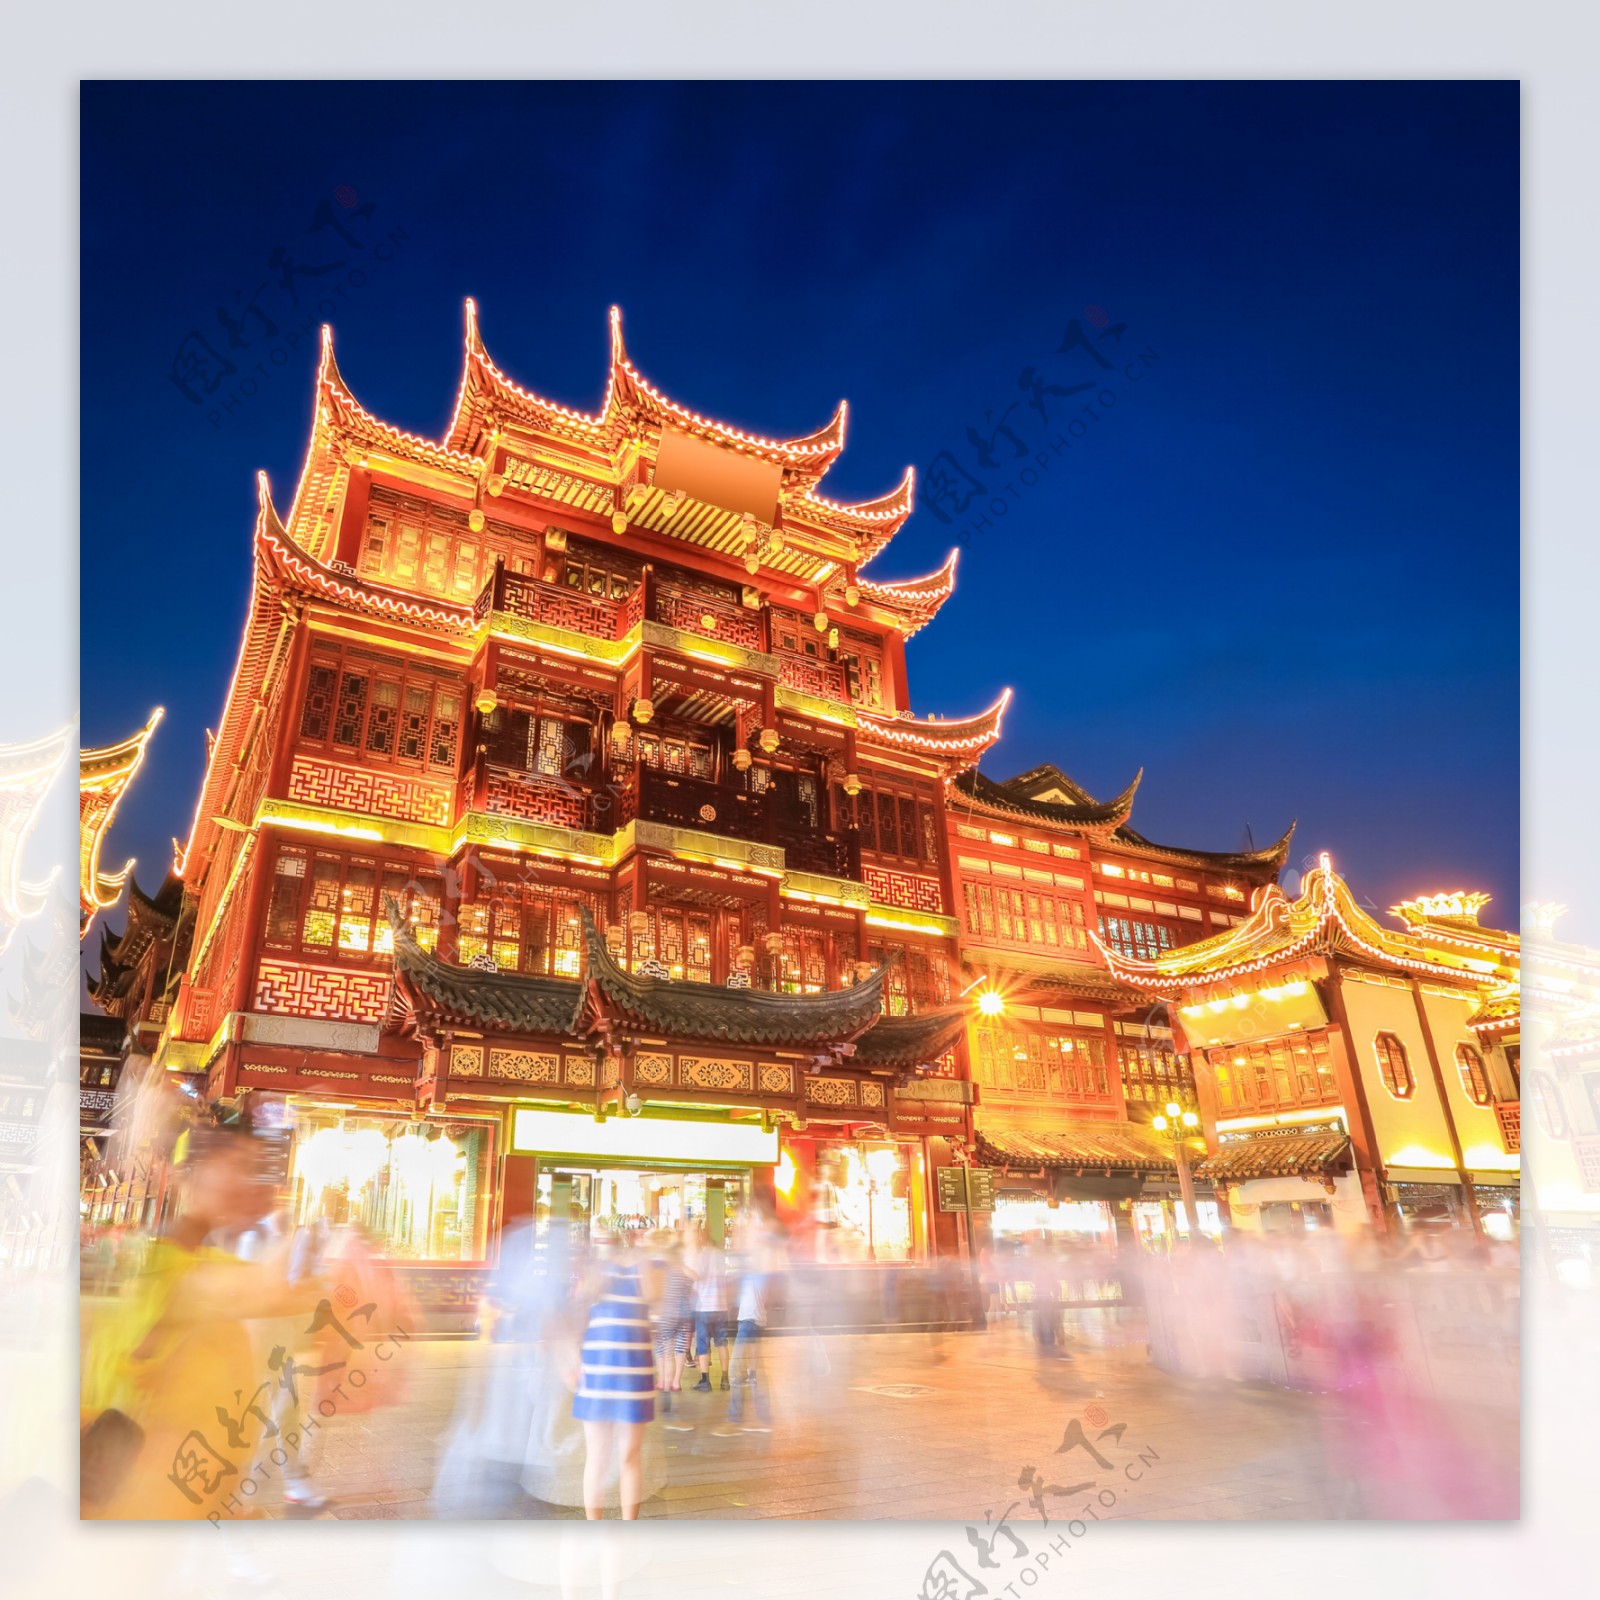 夜晚的中国古代建筑图片